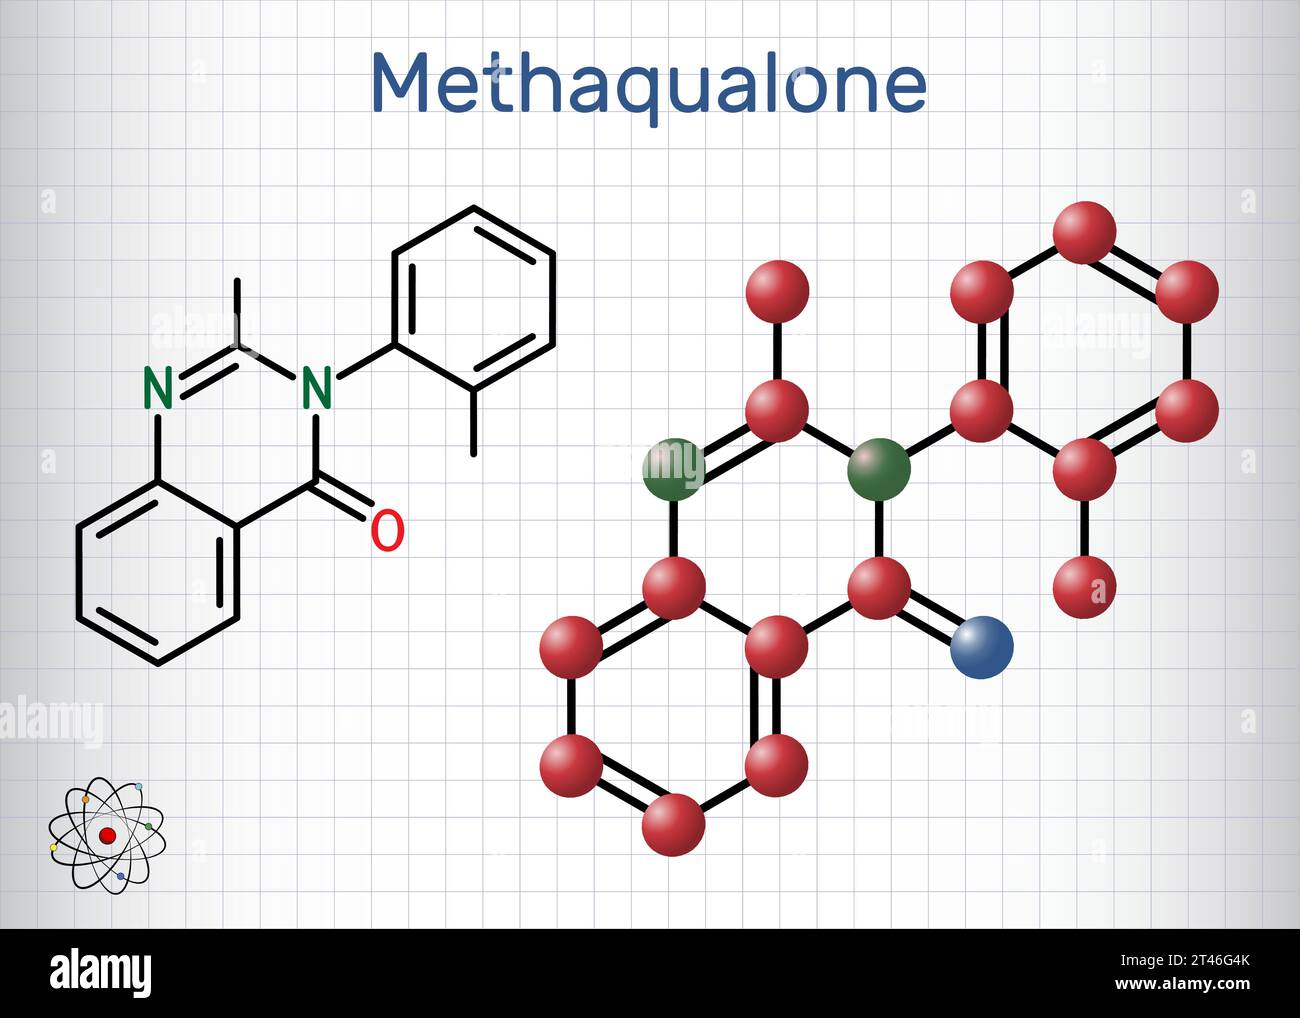 Methaqualone-Molekül. Es ist ein Beruhigungsmittel, ein hypnotisches Medikament, das zur Behandlung von Schlaflosigkeit verwendet wird. Die chemische Formel des Skeletts. Papierverpackungen für Medikamente. Vektorillustratio Stock Vektor